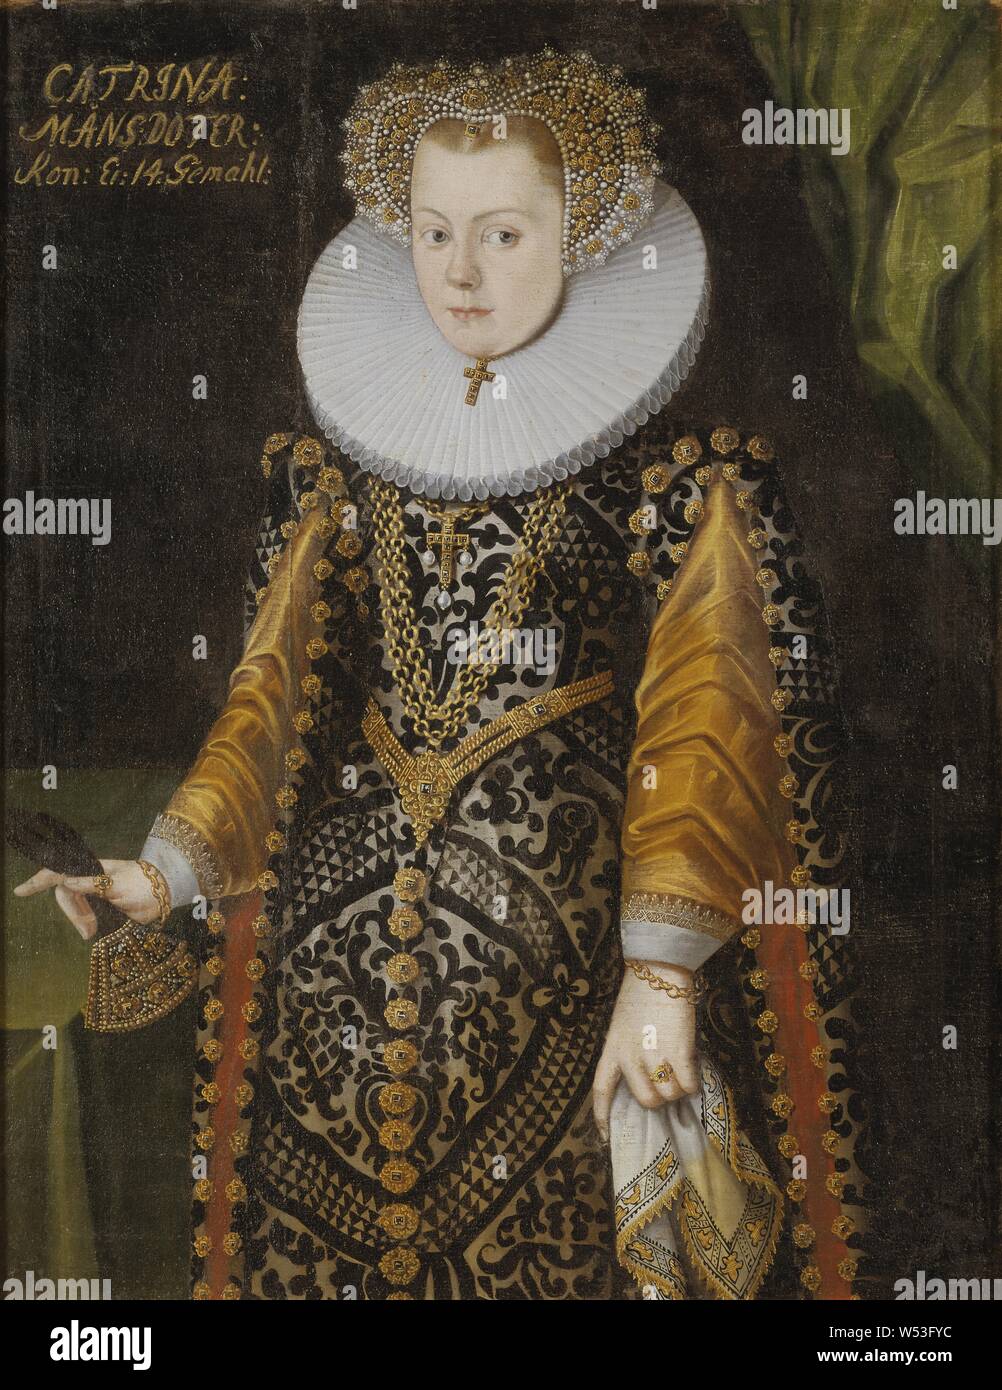 Pittore non identificato, donna sconosciuta, precedentemente noto come Elisabetta, 1549-1597, Principessa di Svezia, duchessa di Mecklenburg, pittura, 1550s, olio su tela, altezza 100 cm (39,3 pollici), Larghezza 77 cm (30,3 pollici) Foto Stock